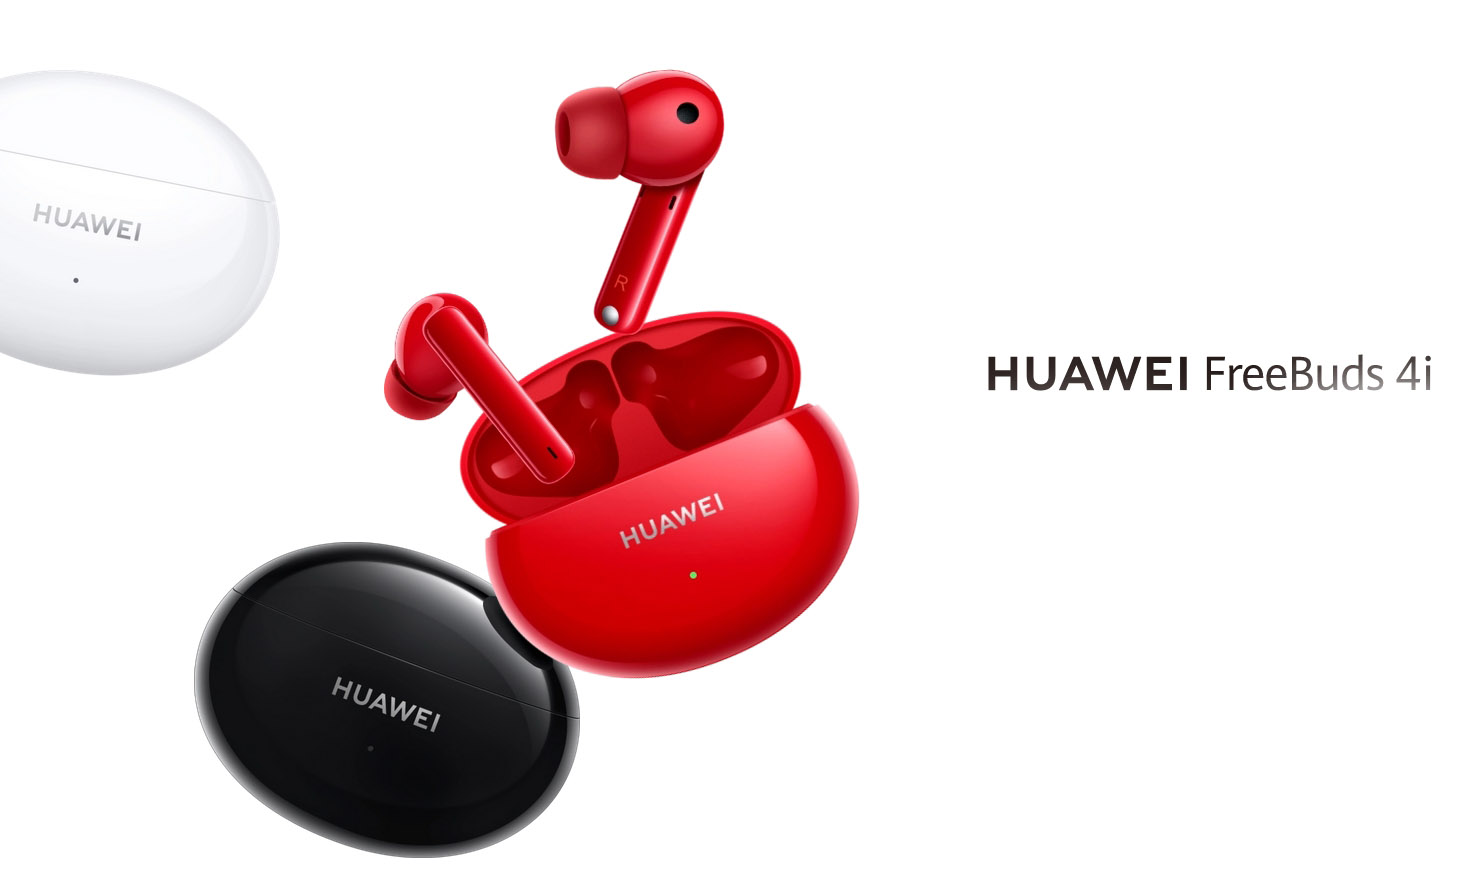 Huawei y HERO crean alianza con los FreeBuds 4i